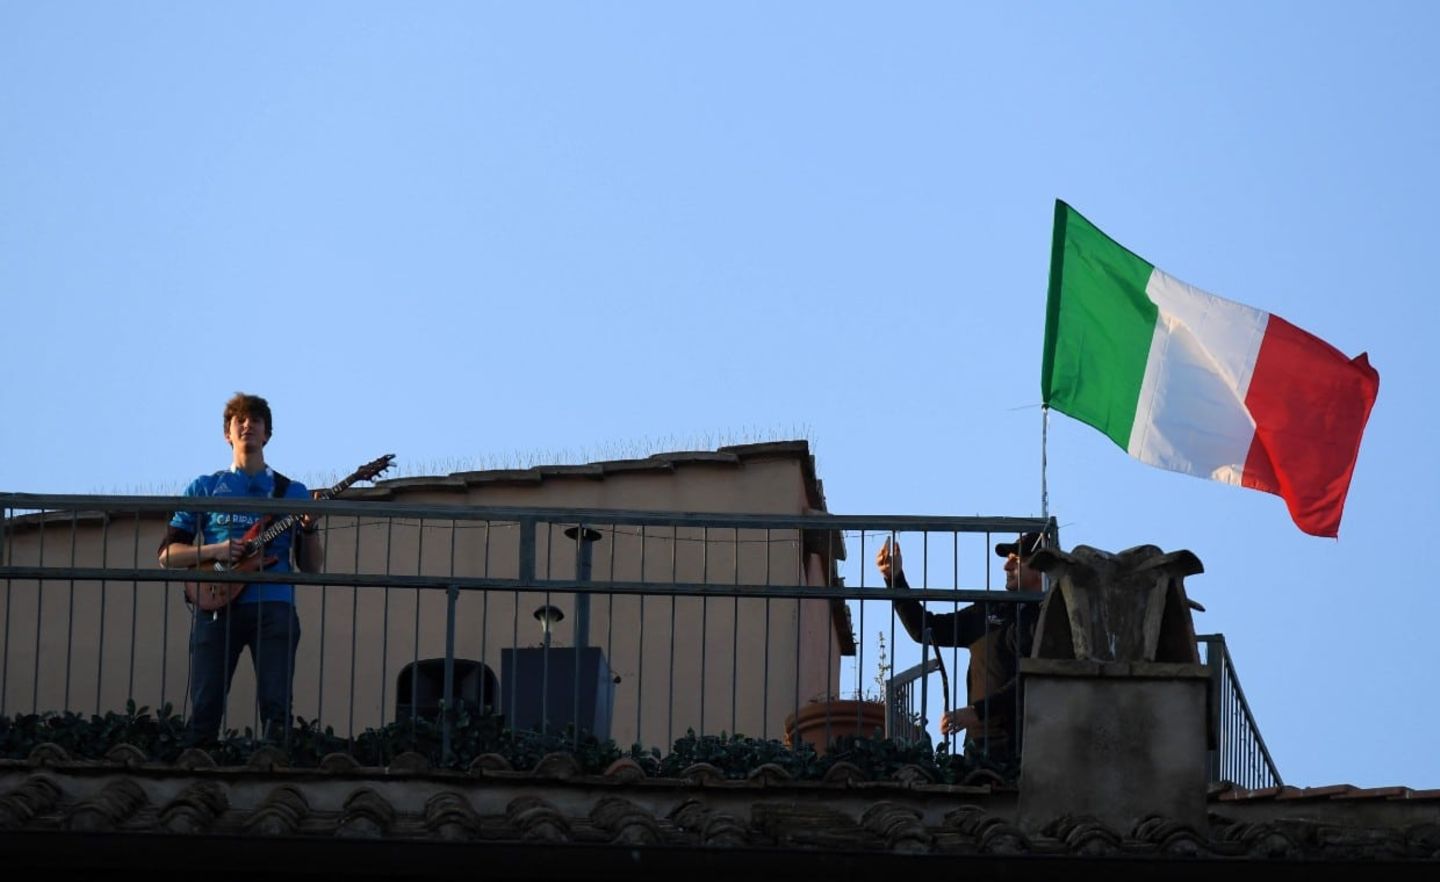 Ein Mann steht auf einem Dach und spielt Guitarre, neben ihm weht die italienische Flagge